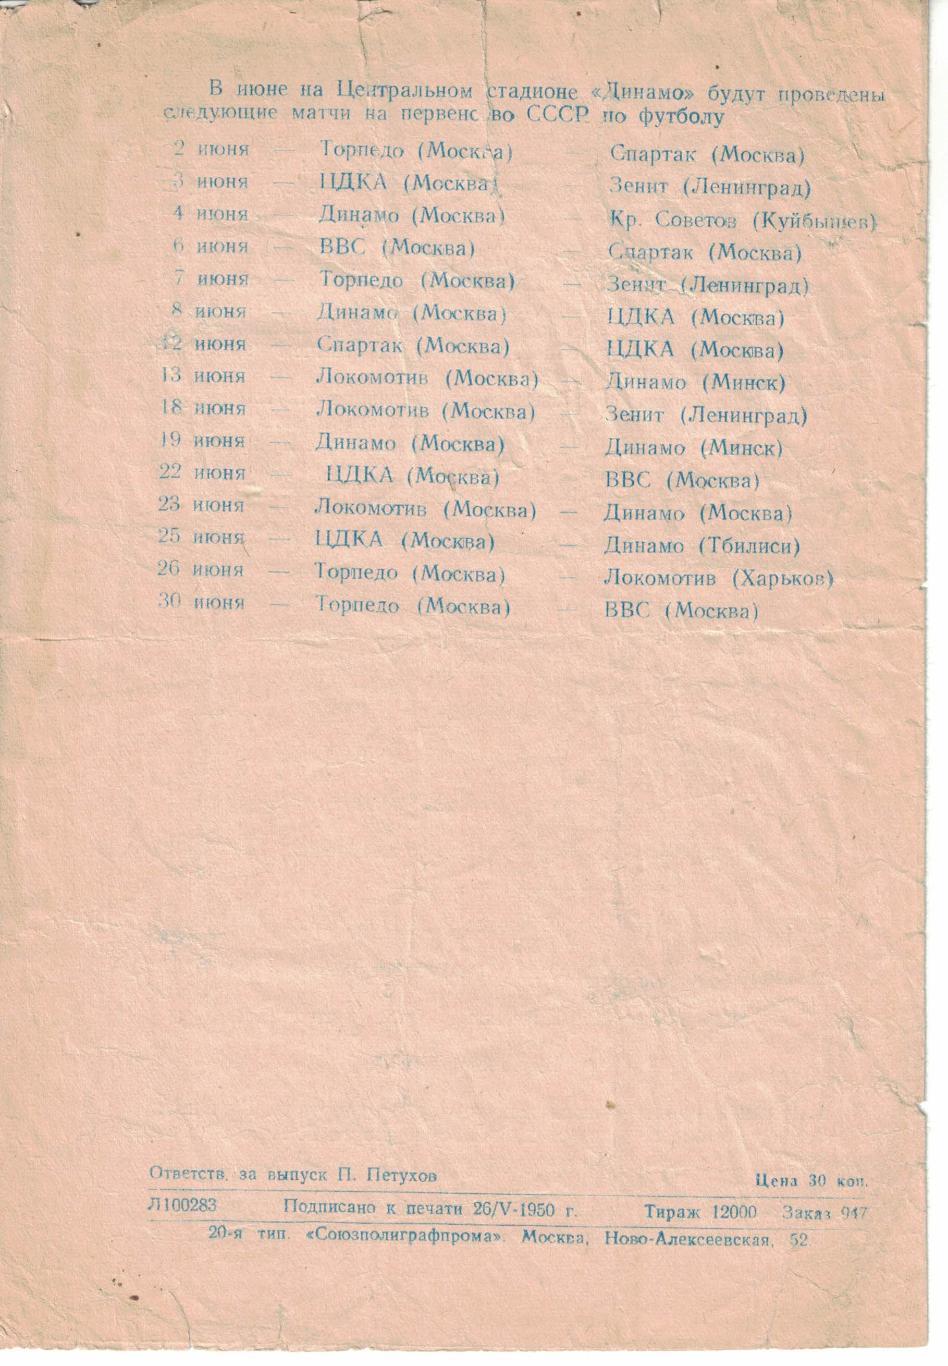 Торпедо Москва - ЦДКА 29.05.1950 Чемпионат СССР 3